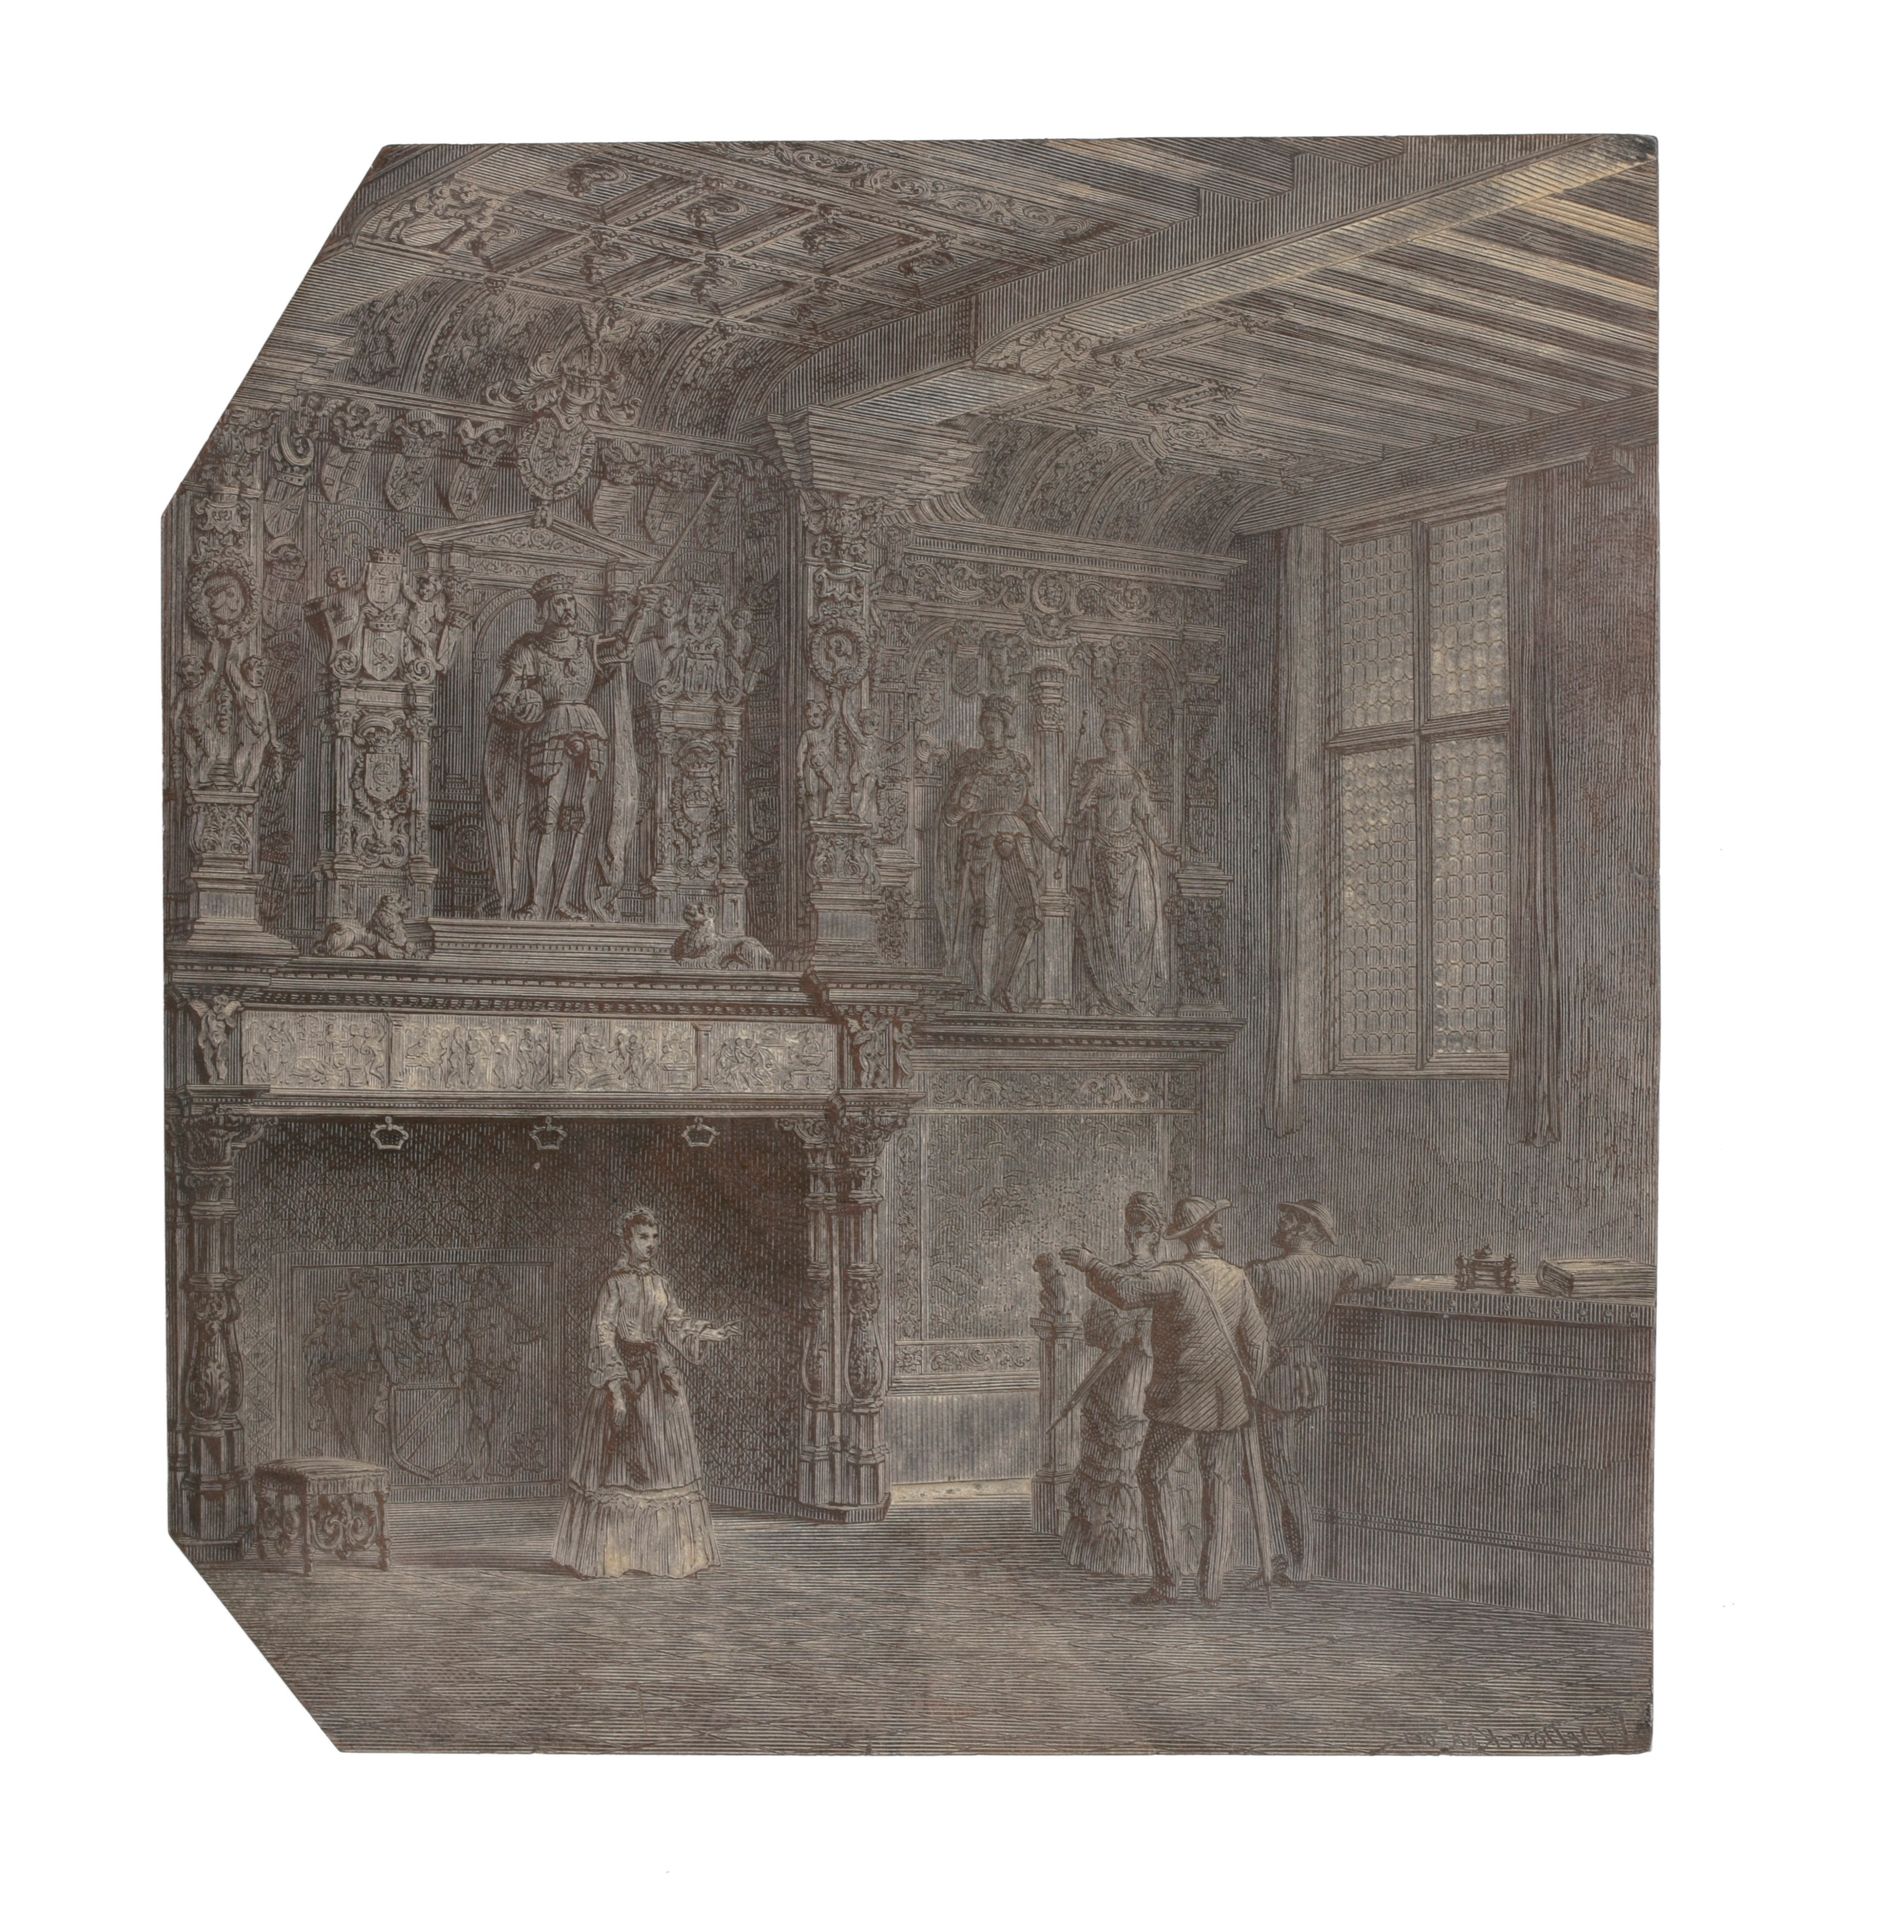 [Brugge] Houtblok met 'Schouw van het Brugse Vrije', c. 1850

Getekend 'V. De Do&hellip;